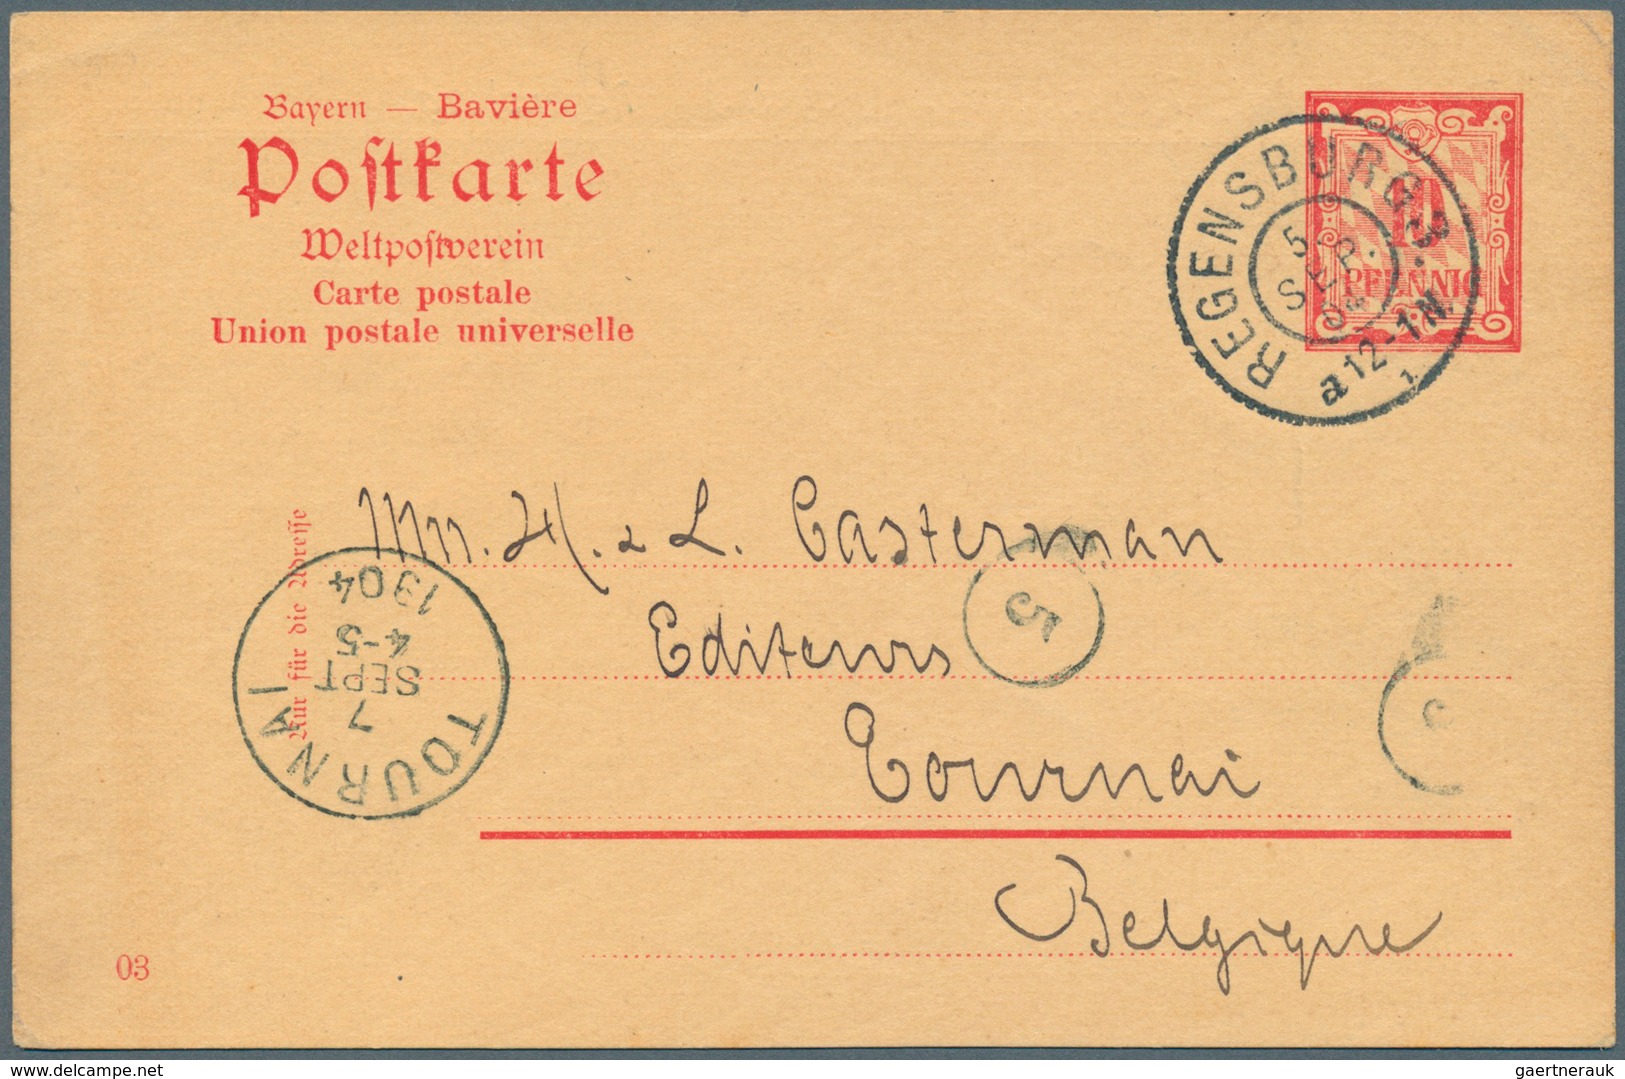 31229 Bayern - Ganzsachen: 1873/1903. Nette Sammlung von 35 gebrauchten Postkarten. Dabei sind viele gute